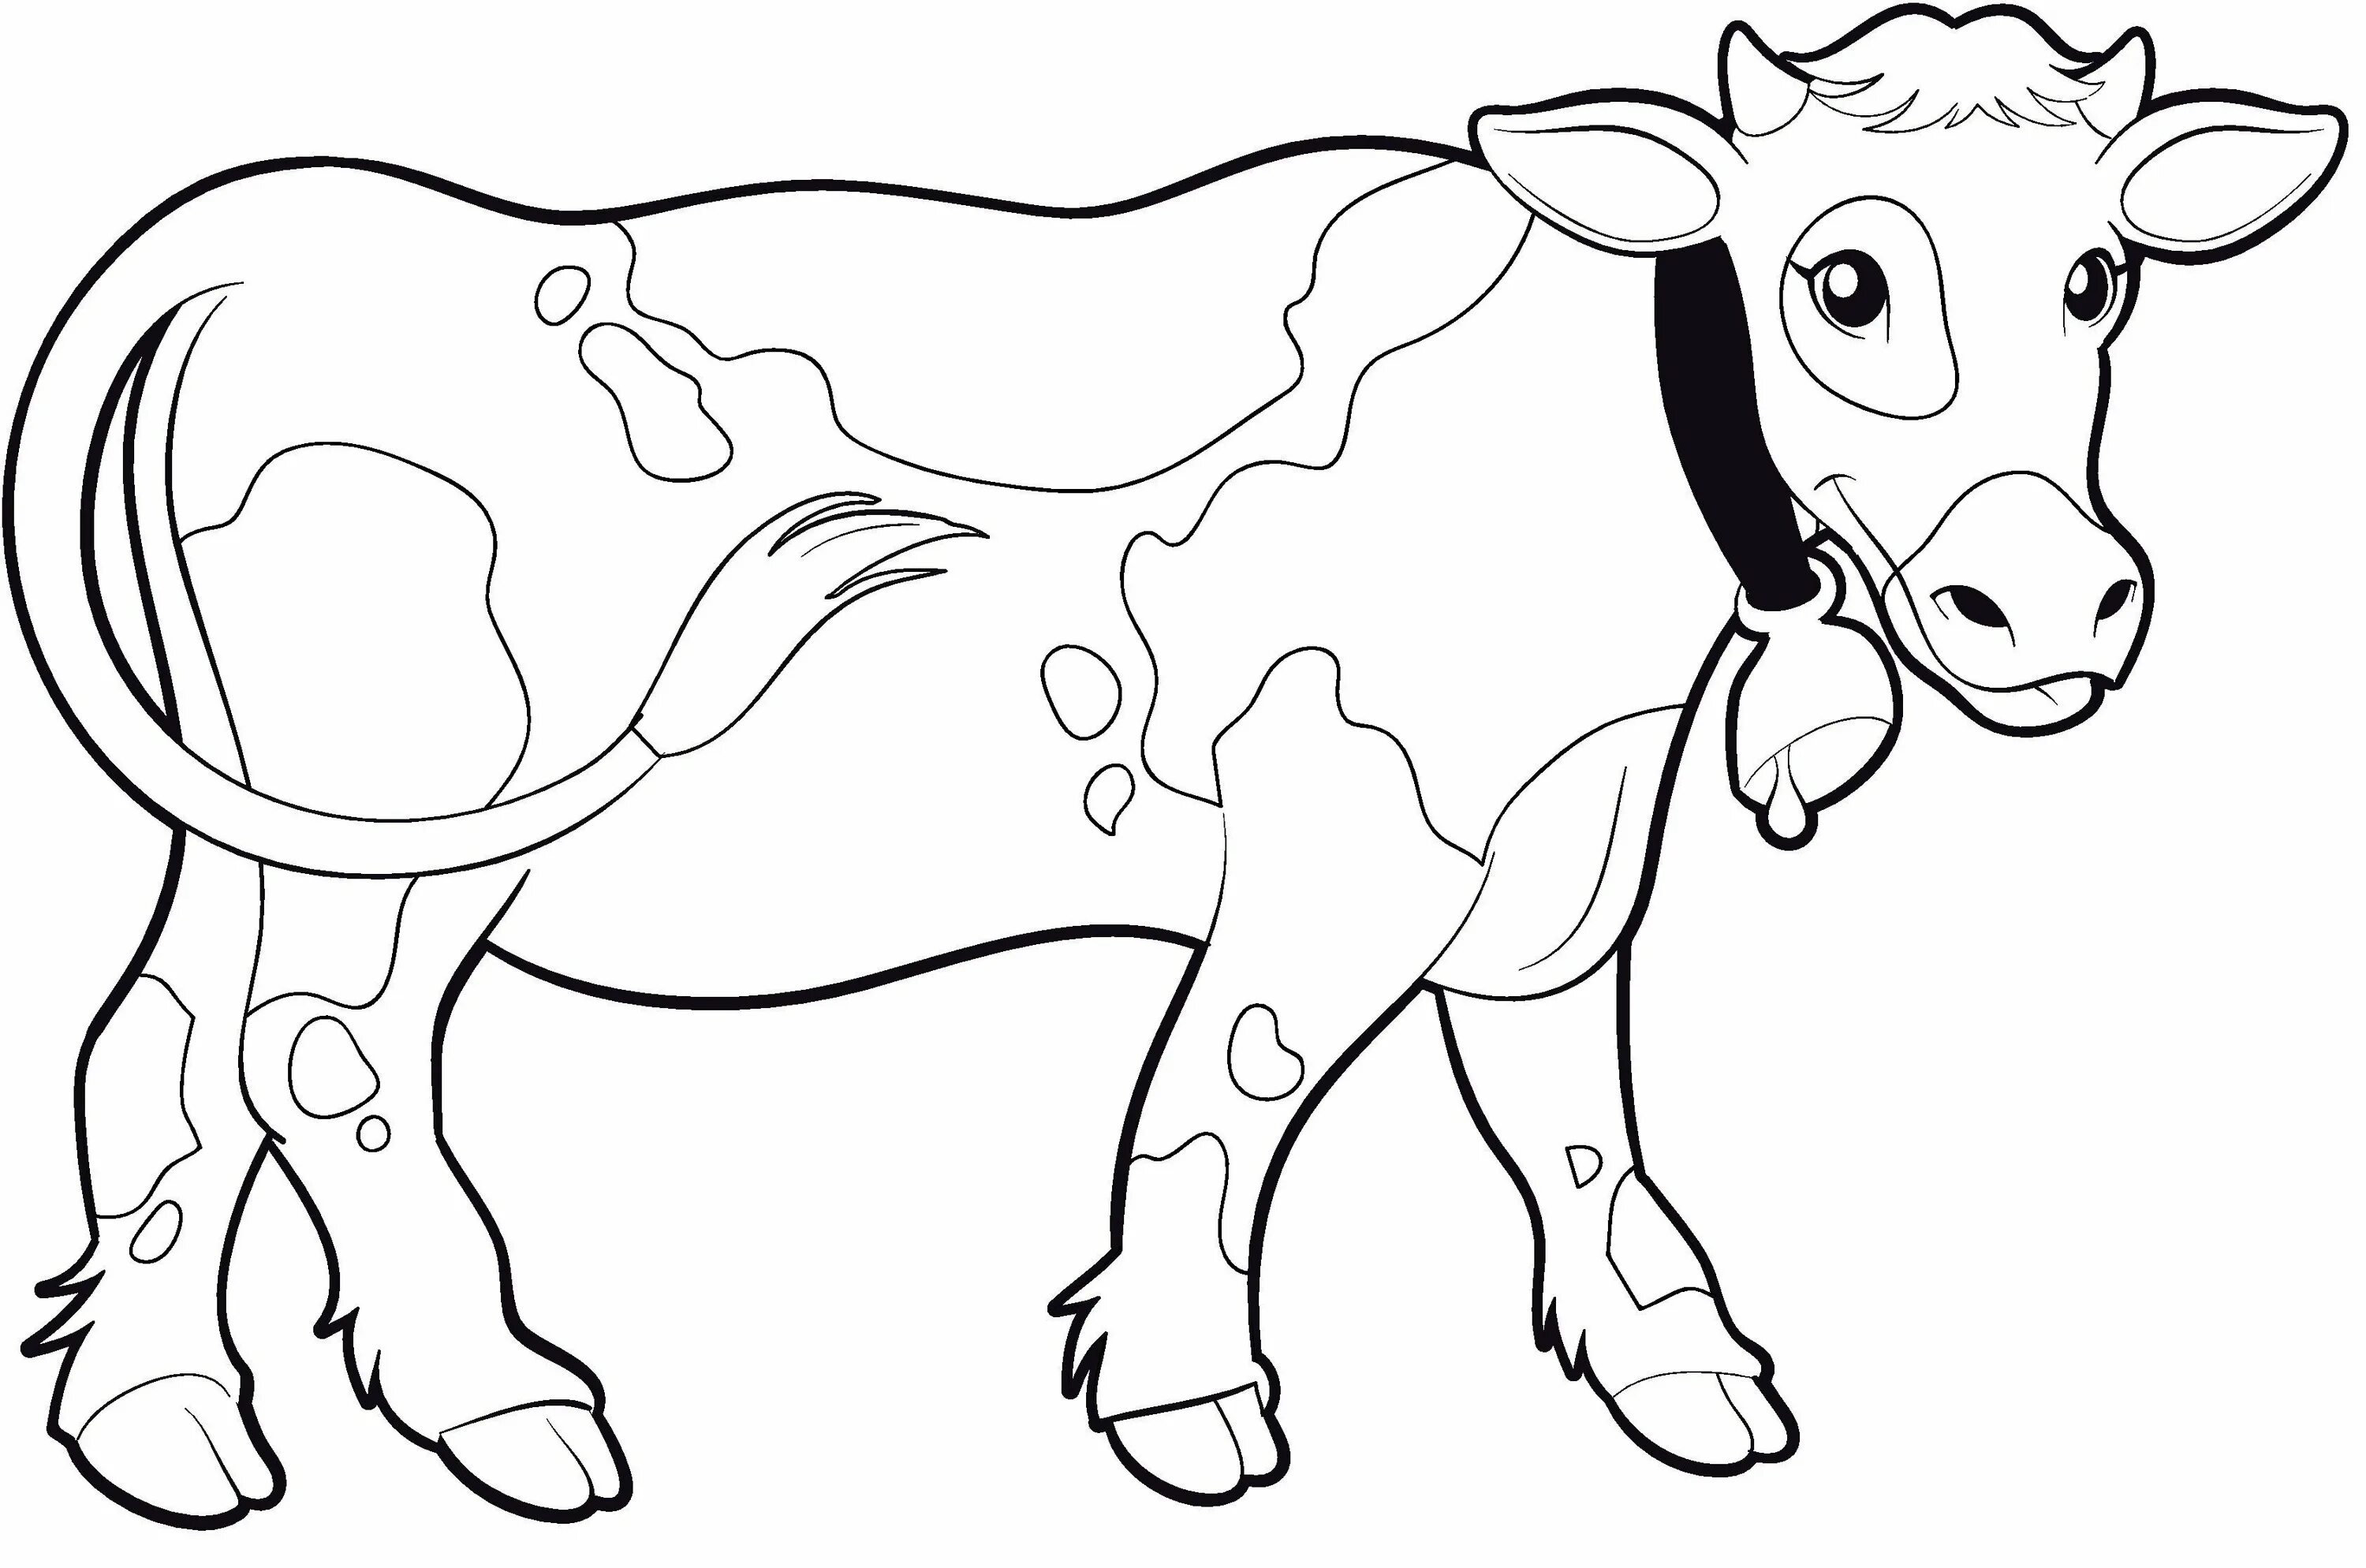 Раскраски для детей 3 года коровы. Раскраска корова. Корова раскраска для детей. Корова раскраска для малышей. Korova raskrazka dla detey.